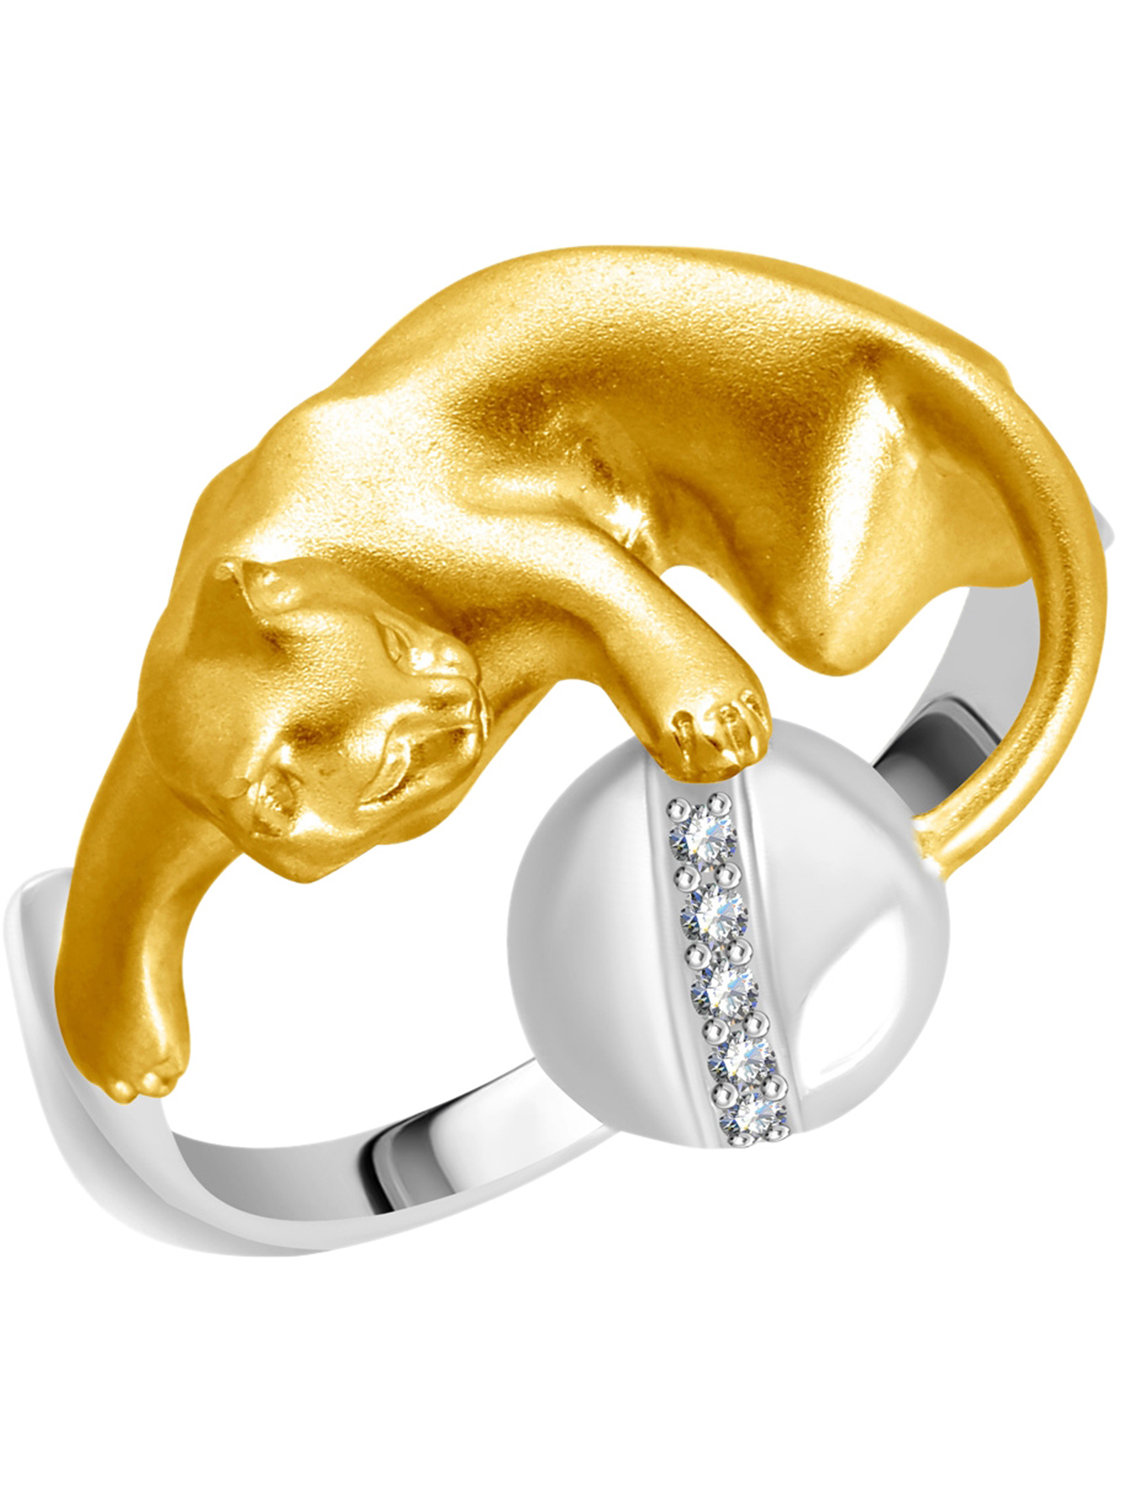 Кольцо из желтого золота с бриллиантами р. 18 Альдзена K-24030_18